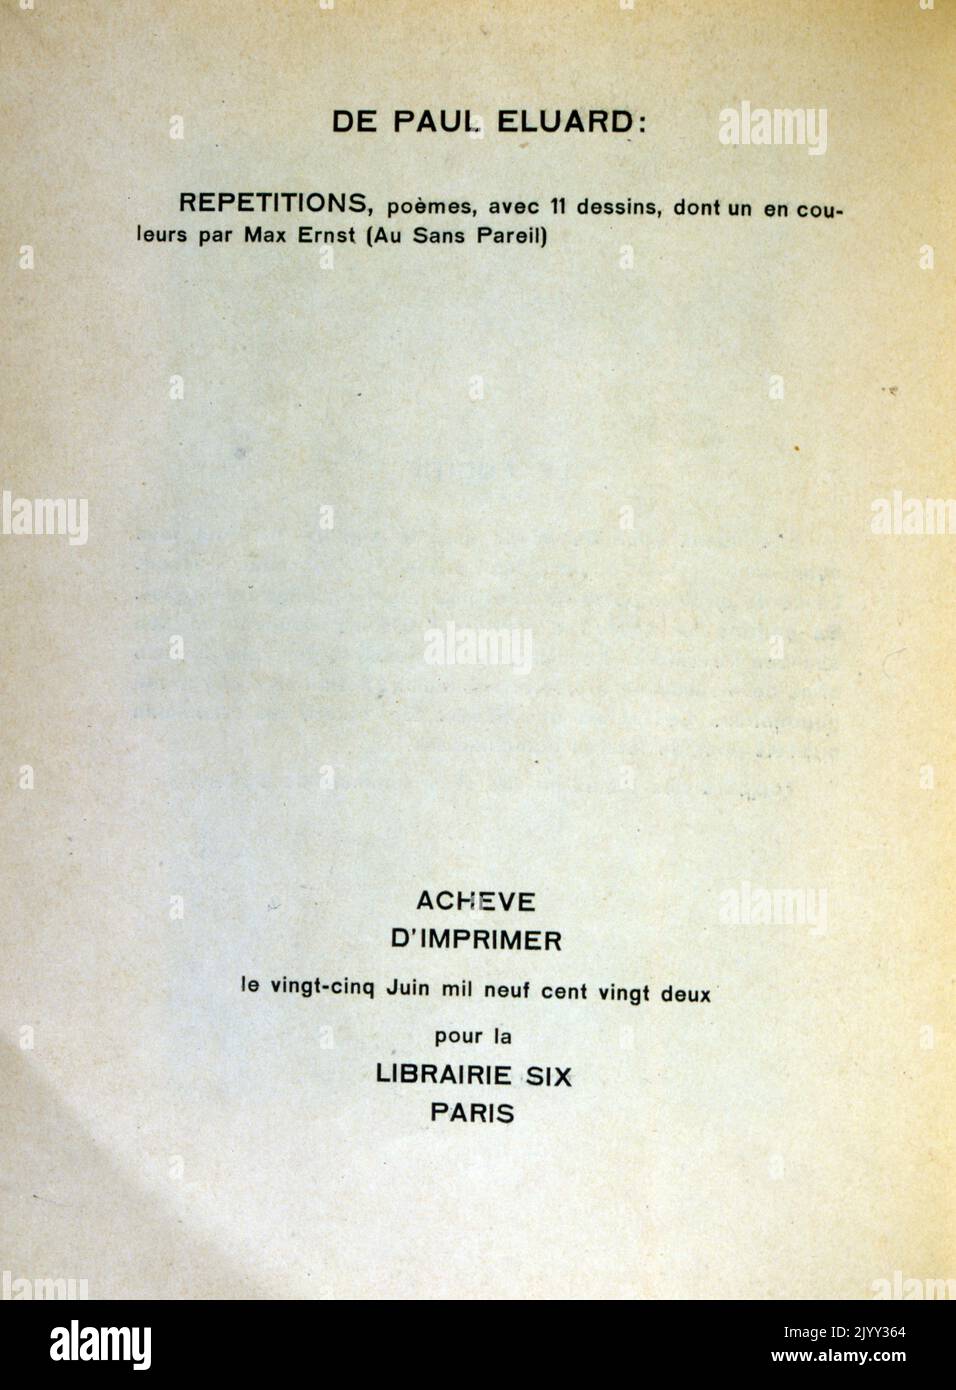 Titelseite von 'Les malheurs des immortels' reveles par Max Ernst et Paul Eluard. 1922; das Unglück der Unvererbarn, enthüllt von Max Ernst und Paul Eluard Stockfoto